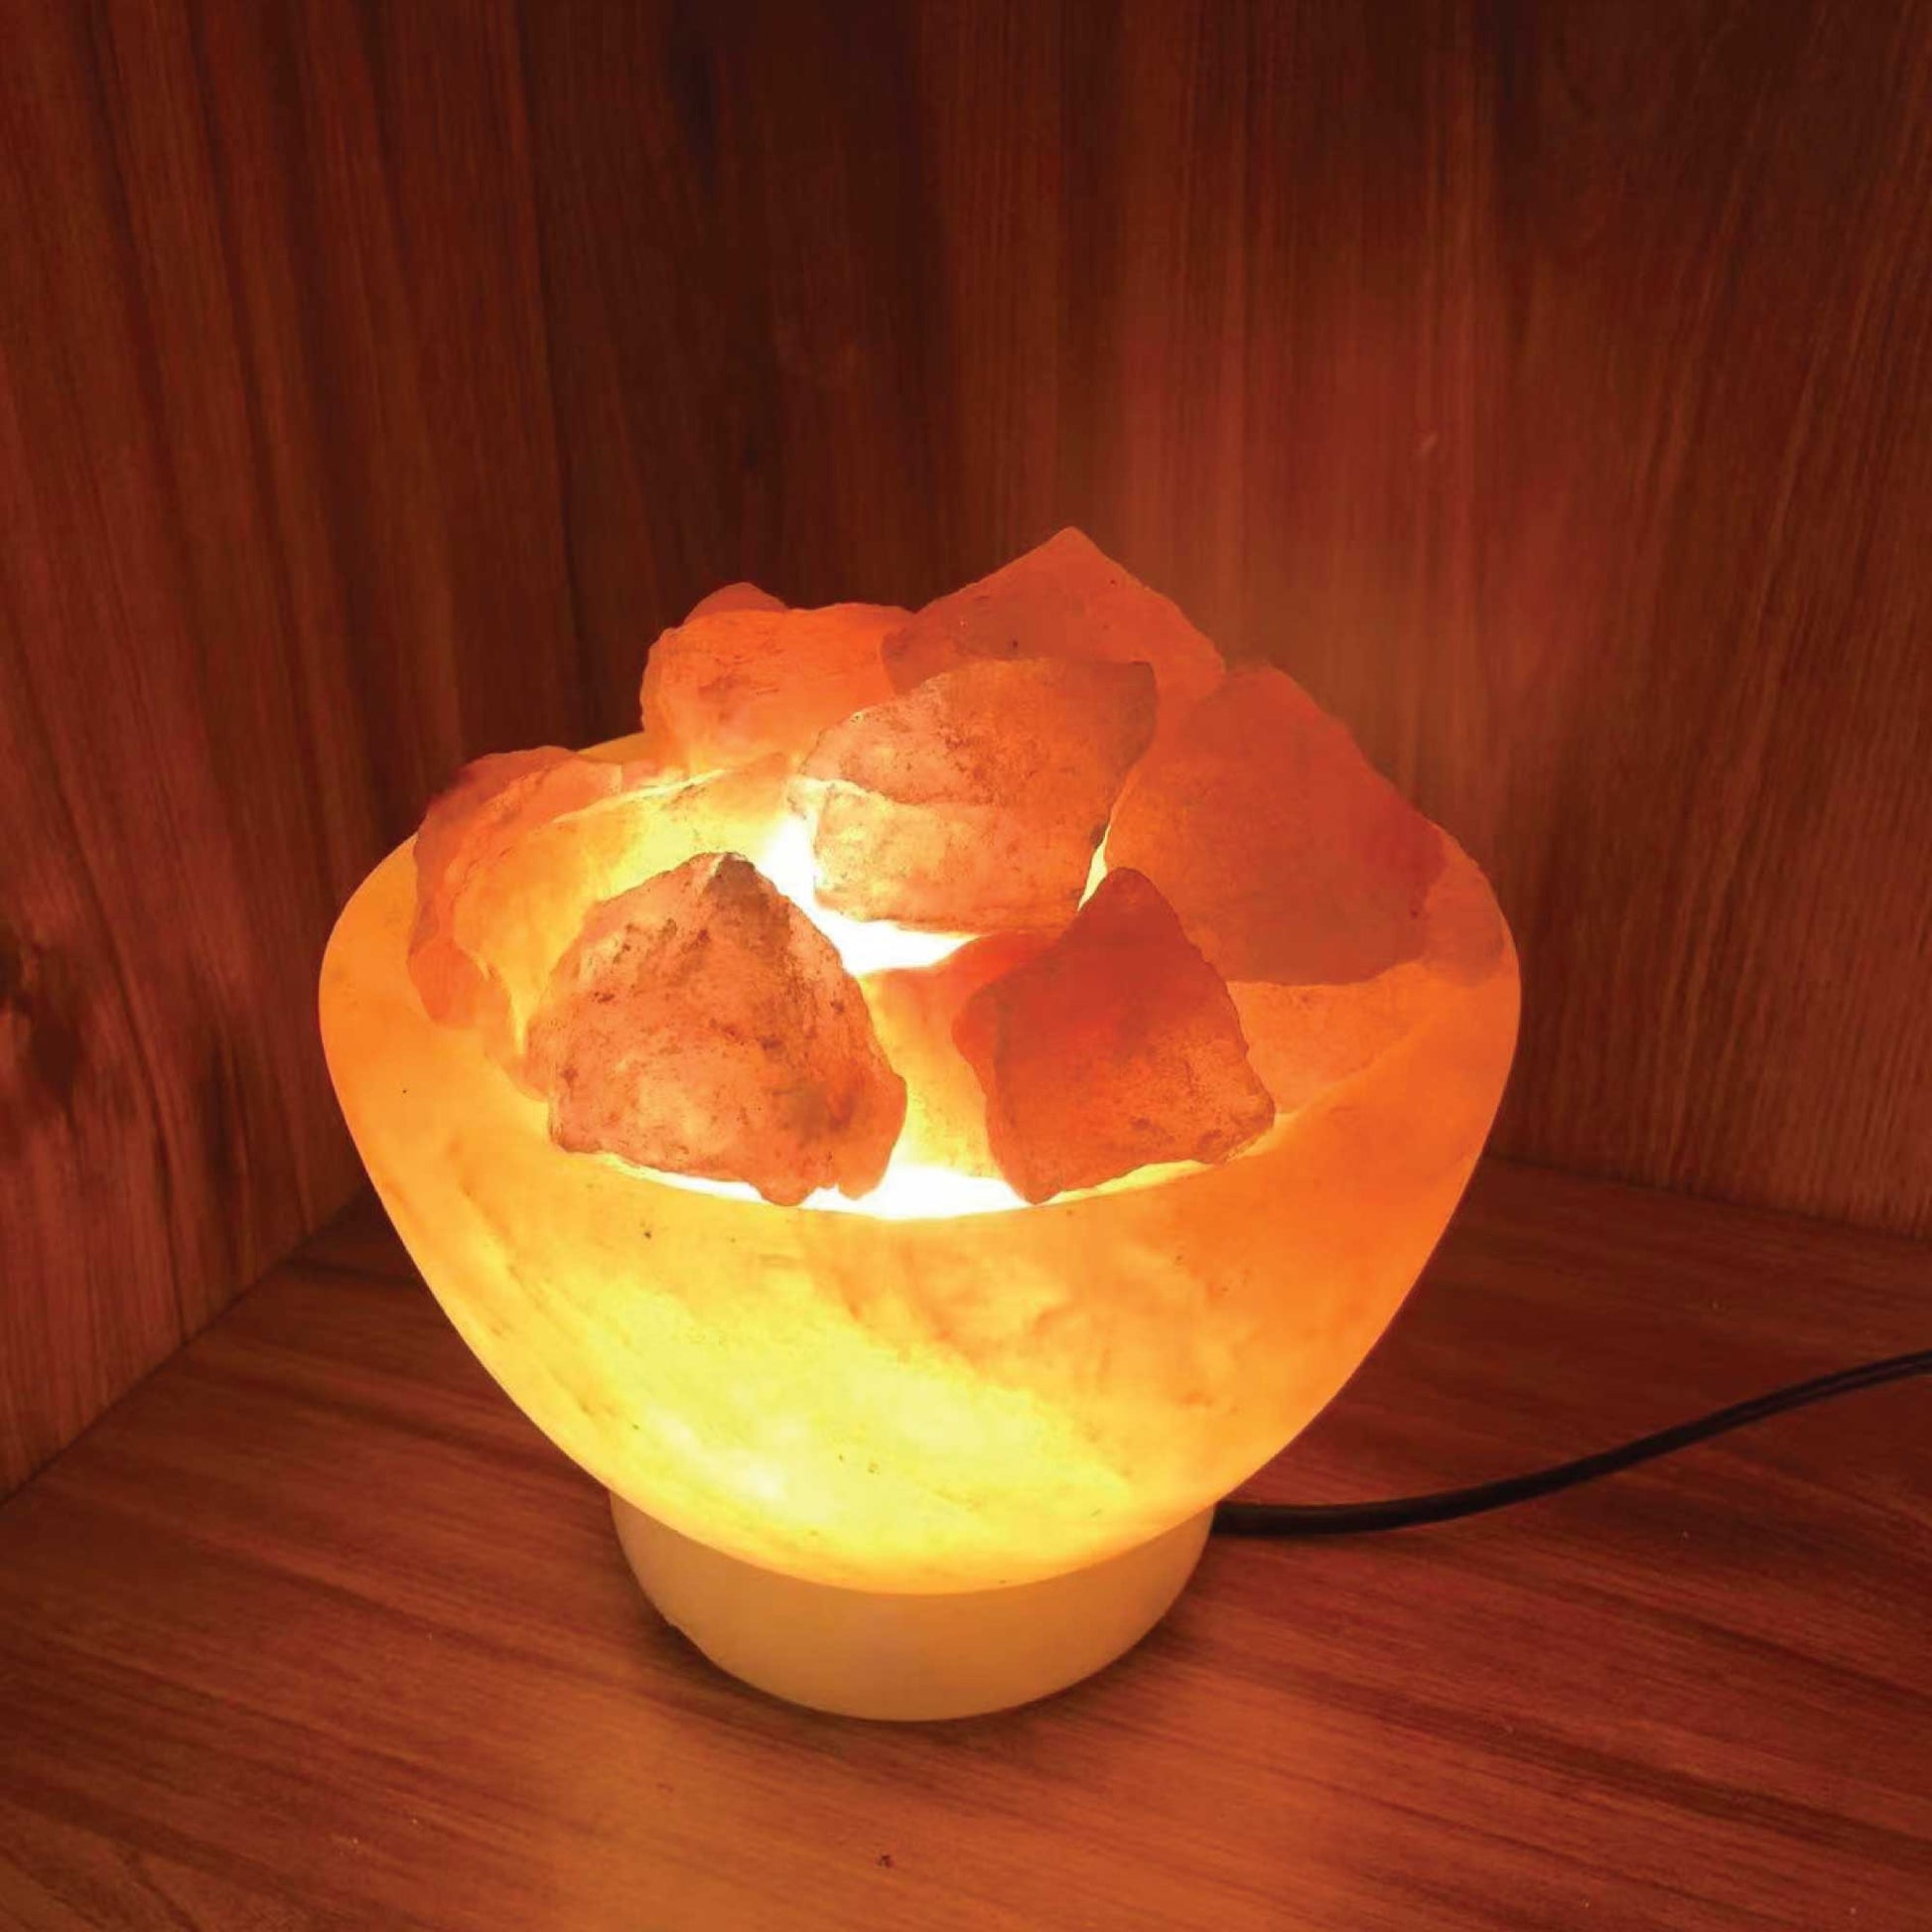 12V 12W Fire Bowl Himalayan Pink Salt Lamp Carved Rock Crystal Light Bulb On/Off